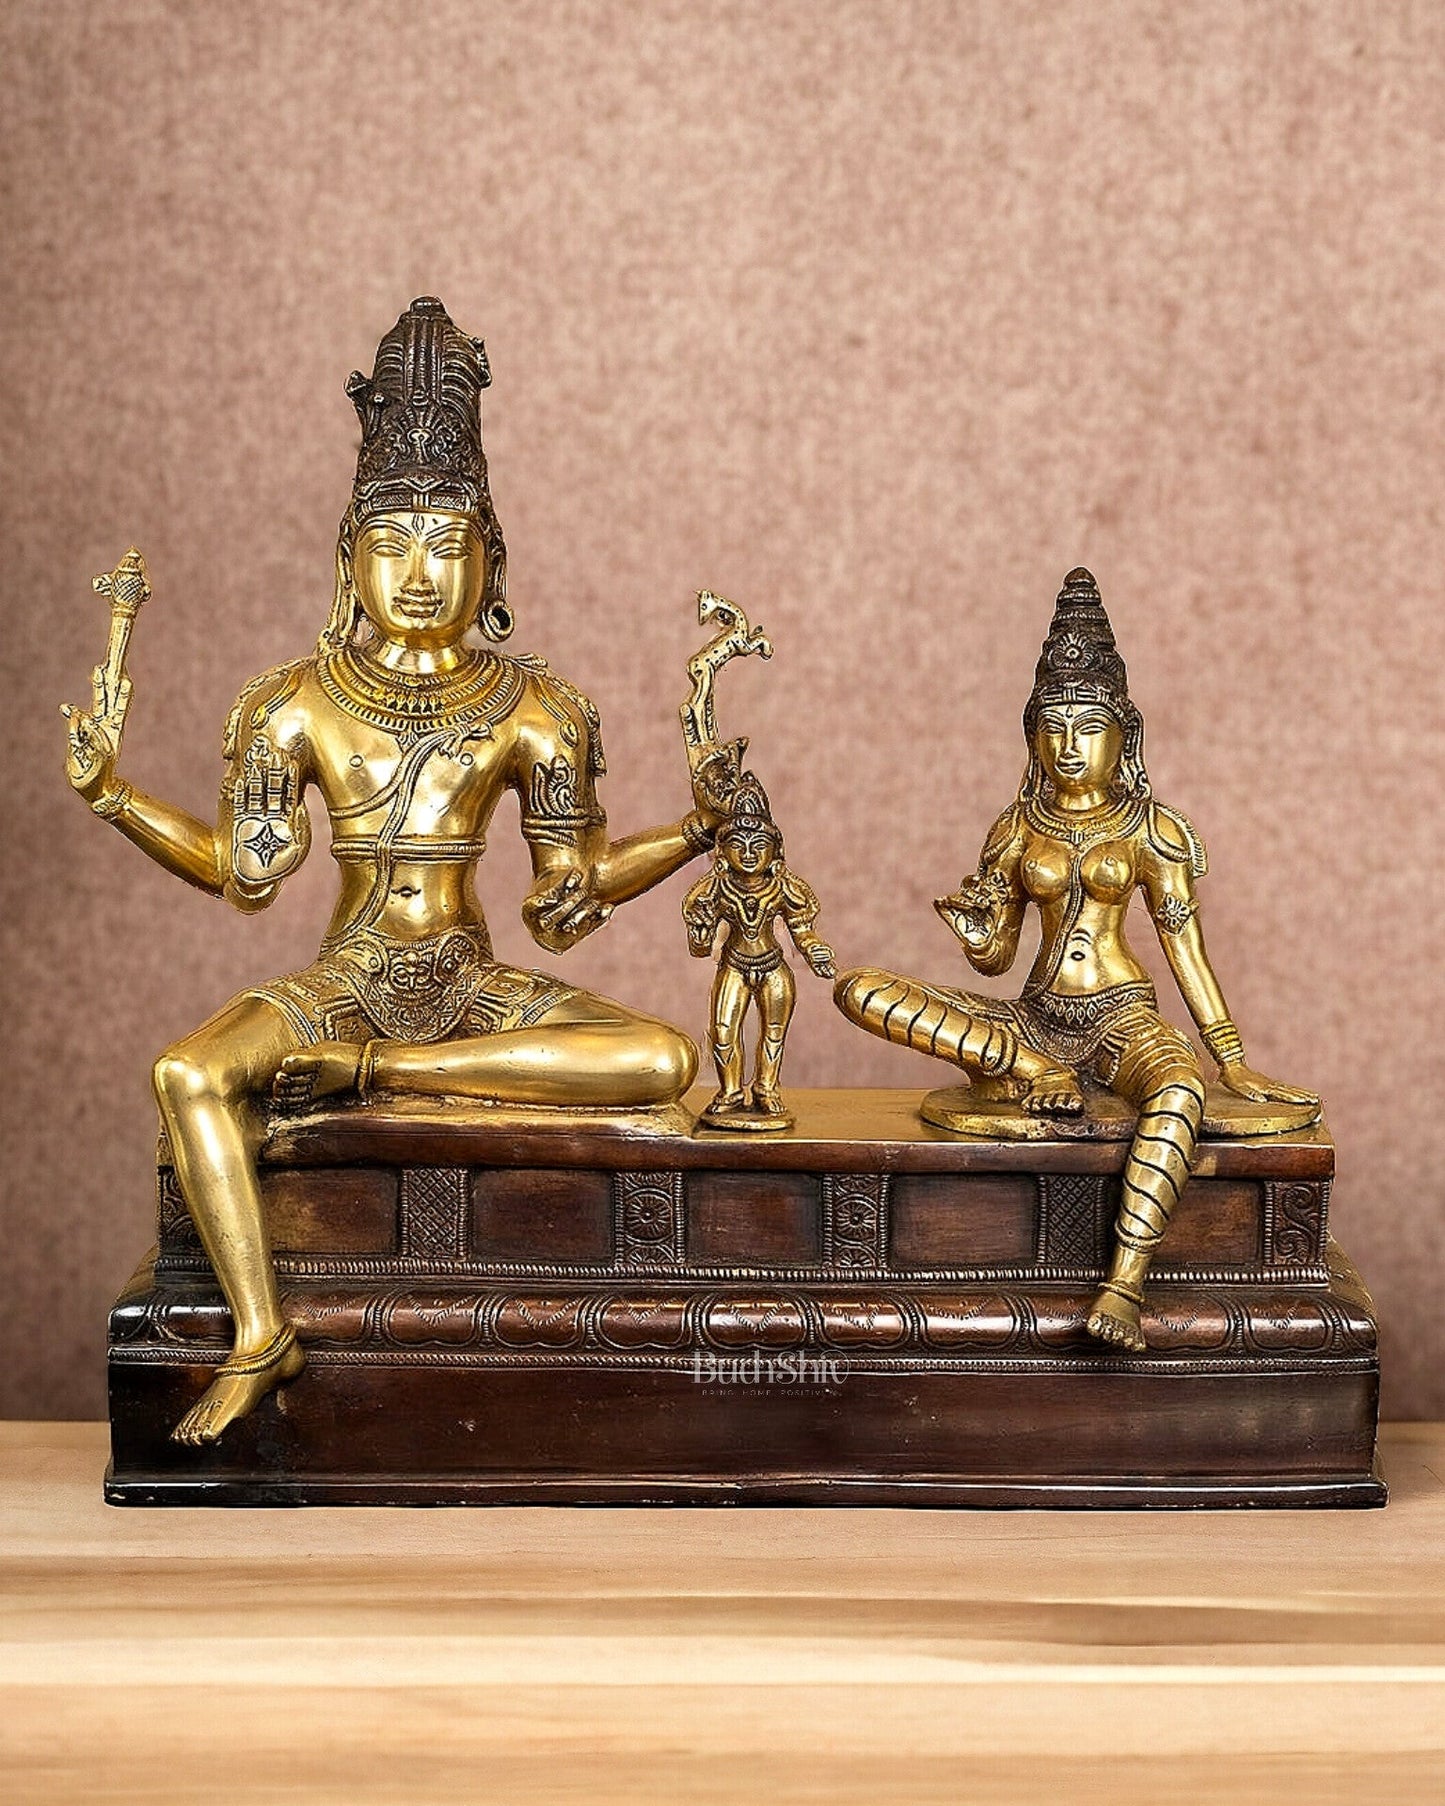 Brass Somaskanda Statue - Lord Shiva, Parvati, Murugan 15 inch - Budhshiv.com